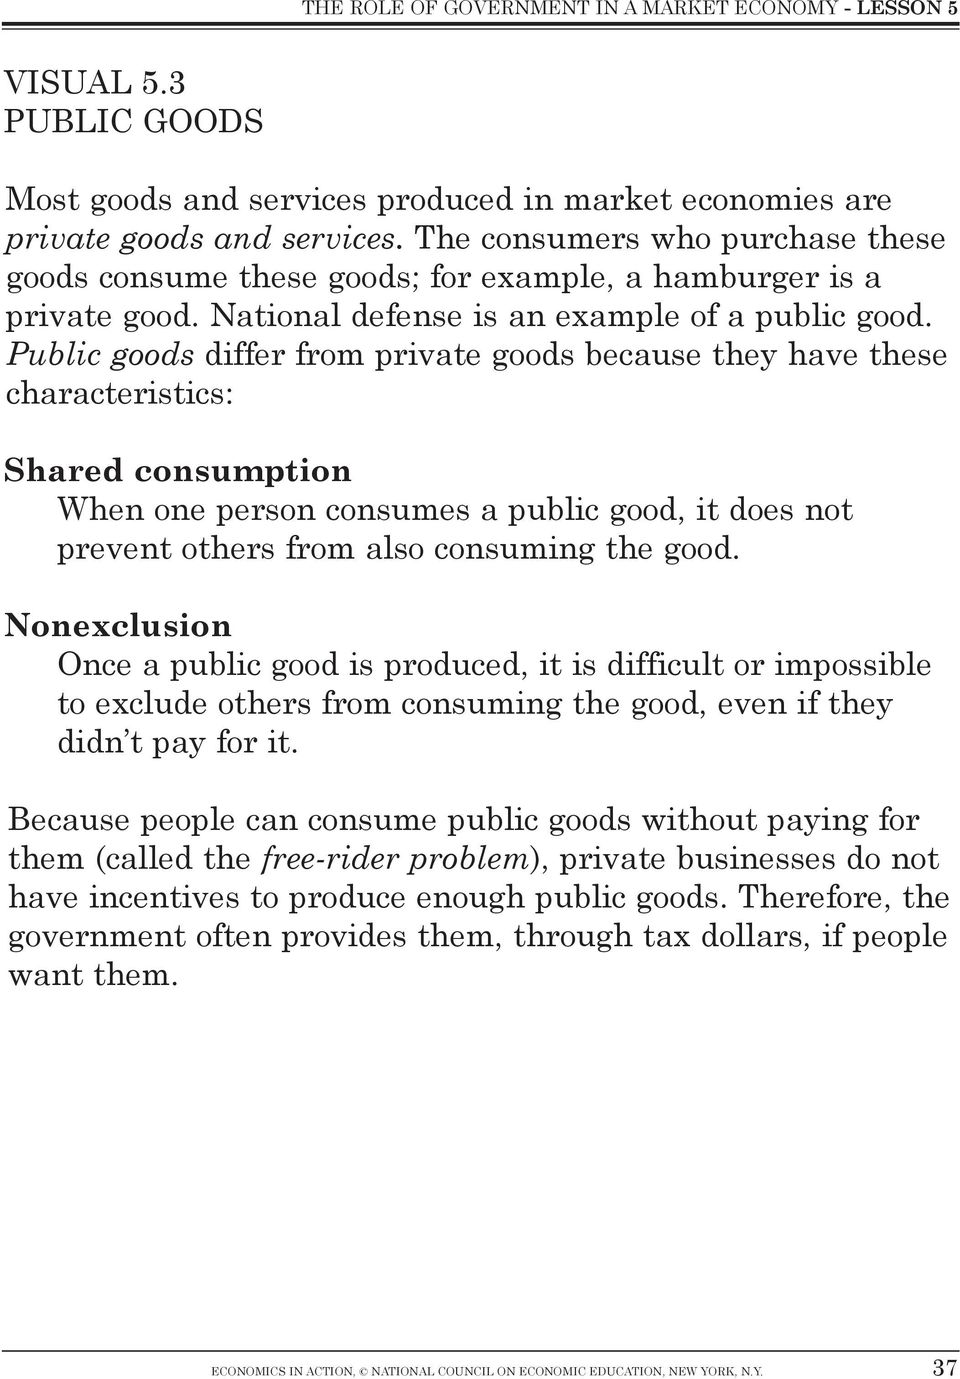 characteristics of public goods